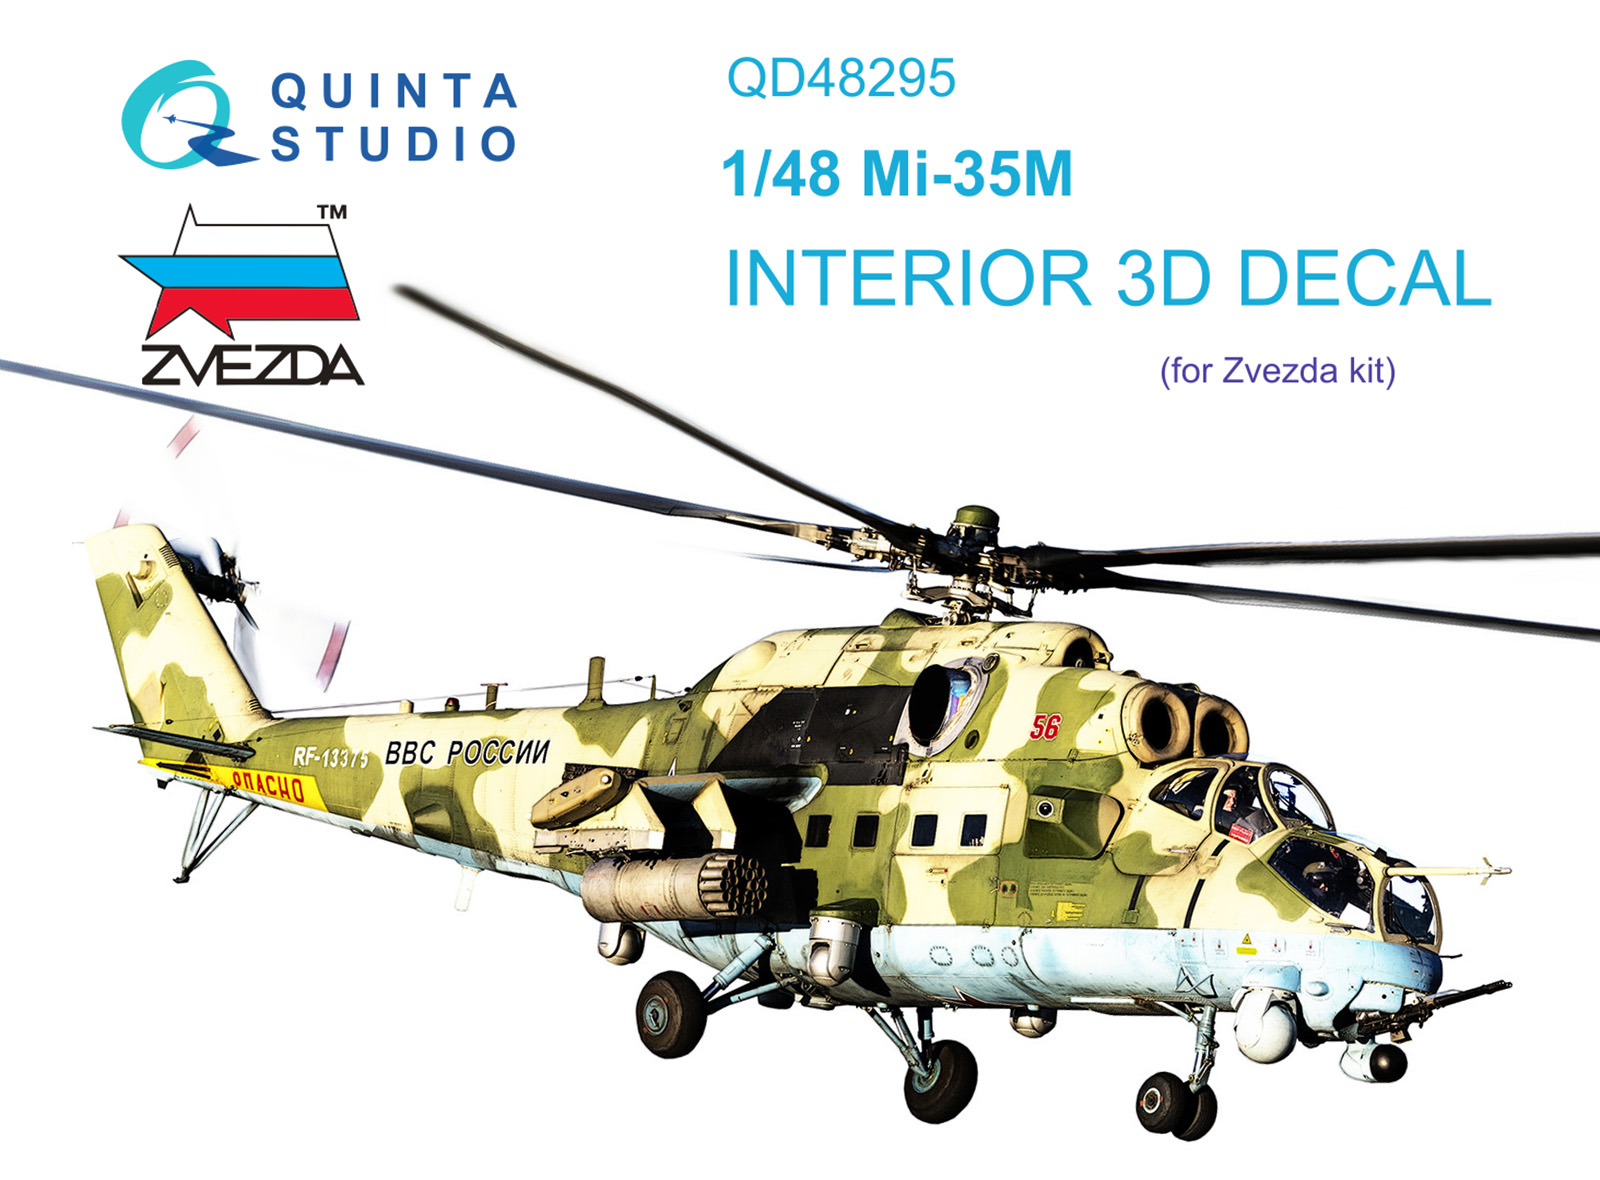 3D Decal for Mi-35M cockpit interior (Zvezda)